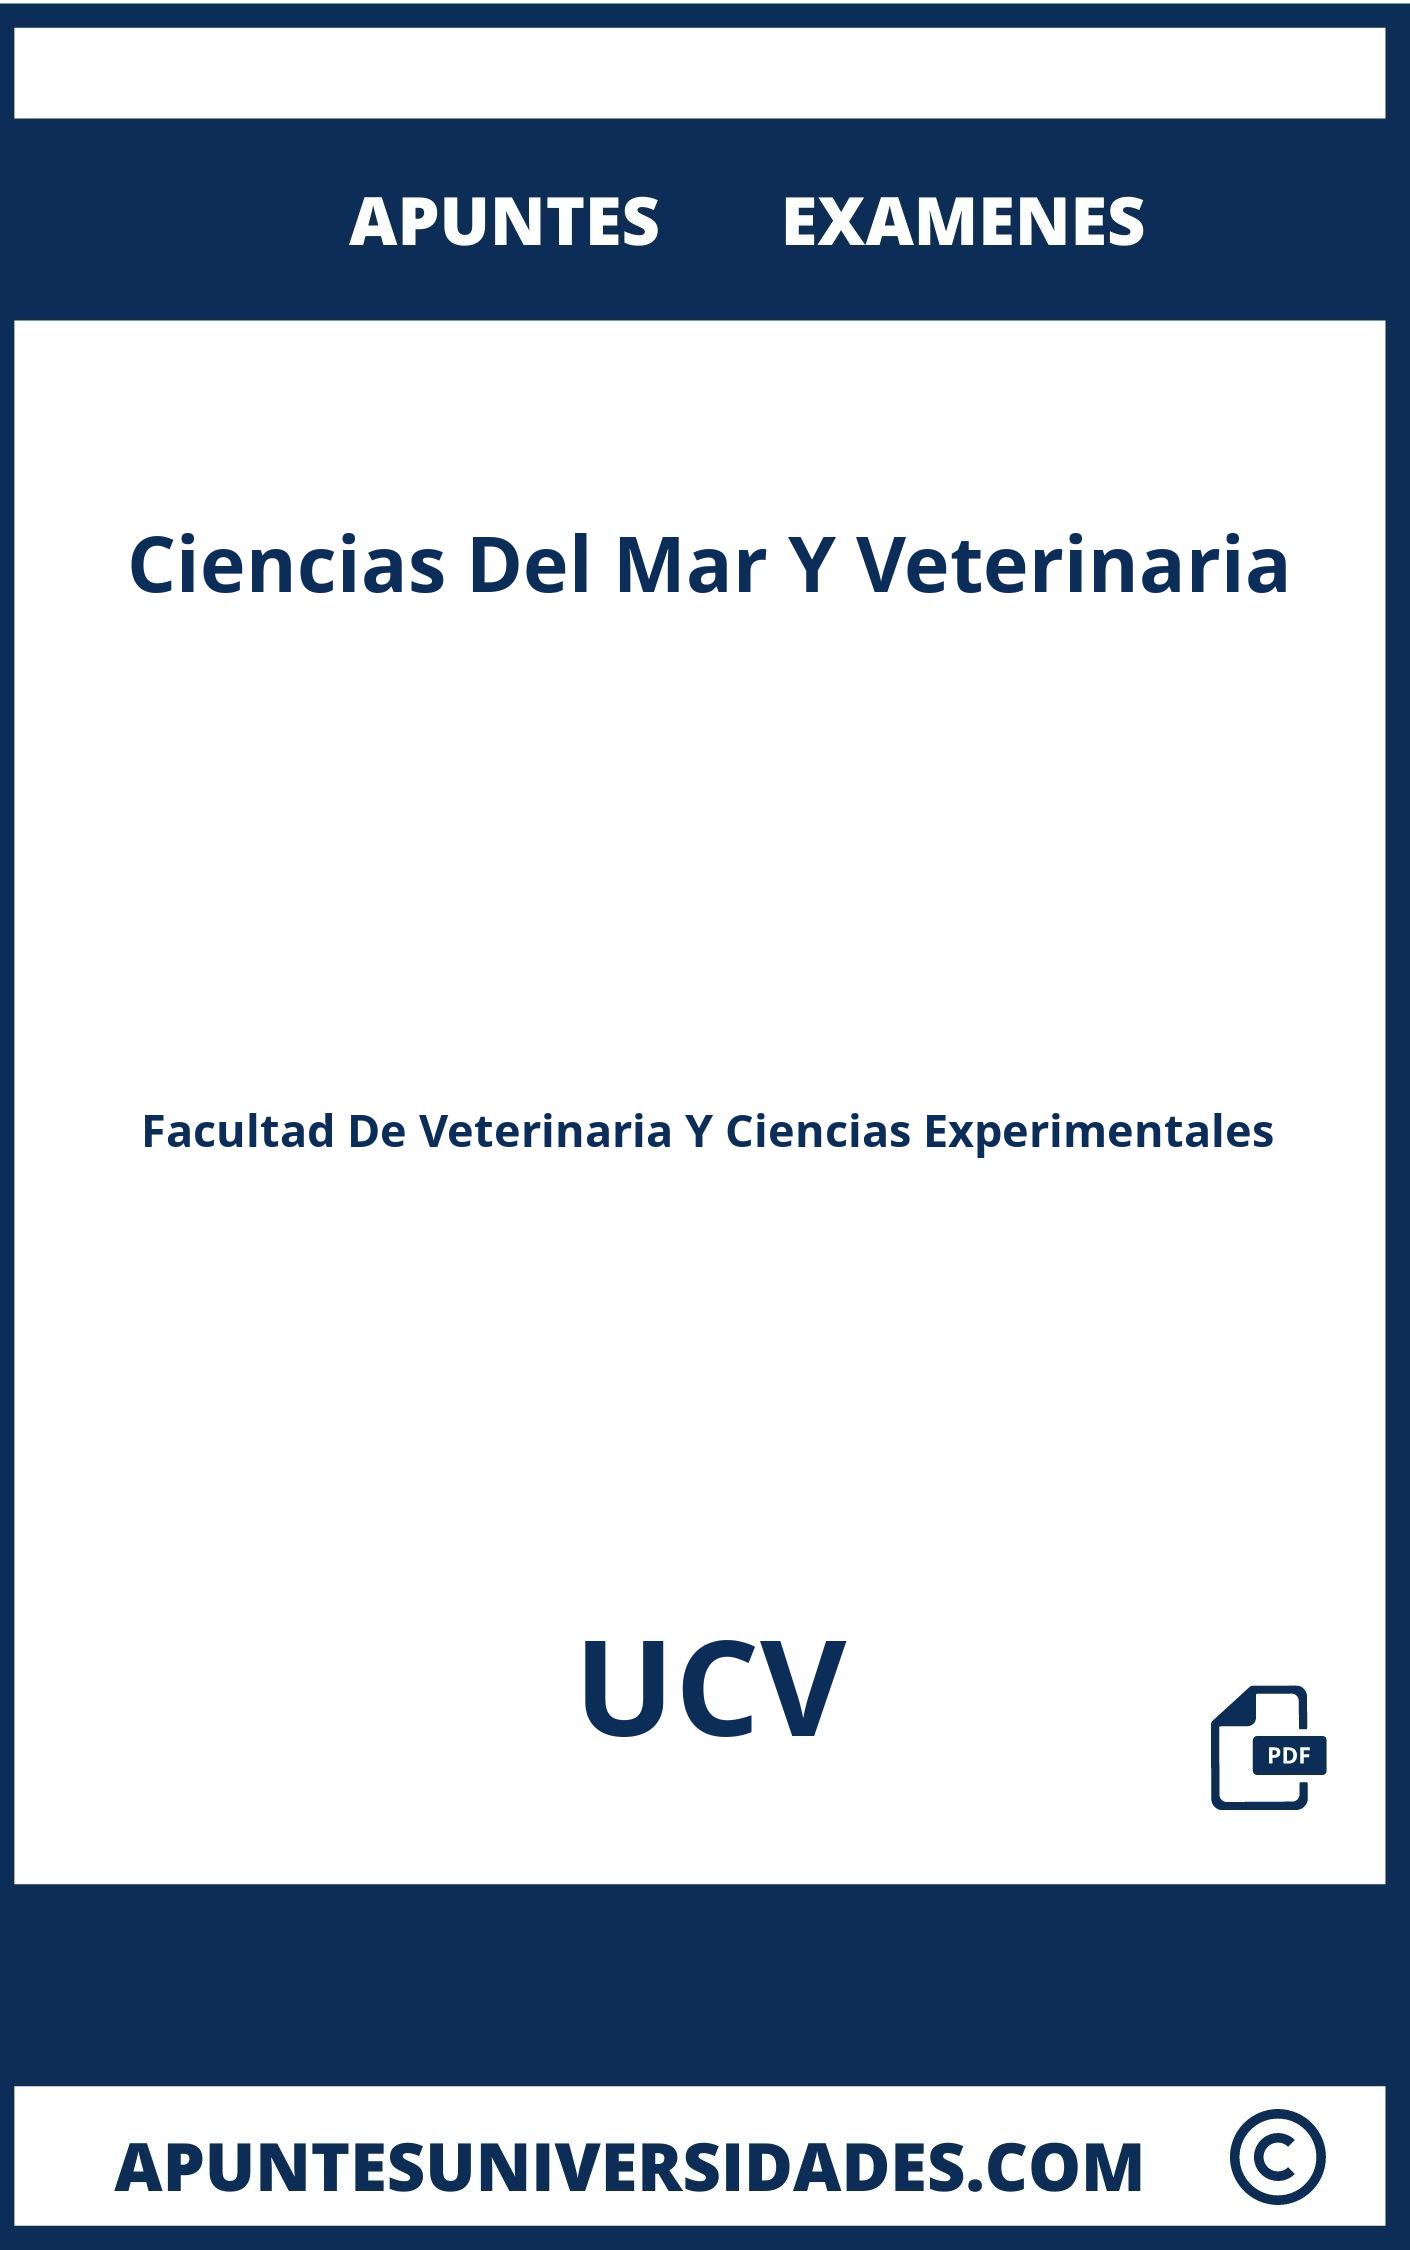 Apuntes Examenes Ciencias Del Mar Y Veterinaria UCV